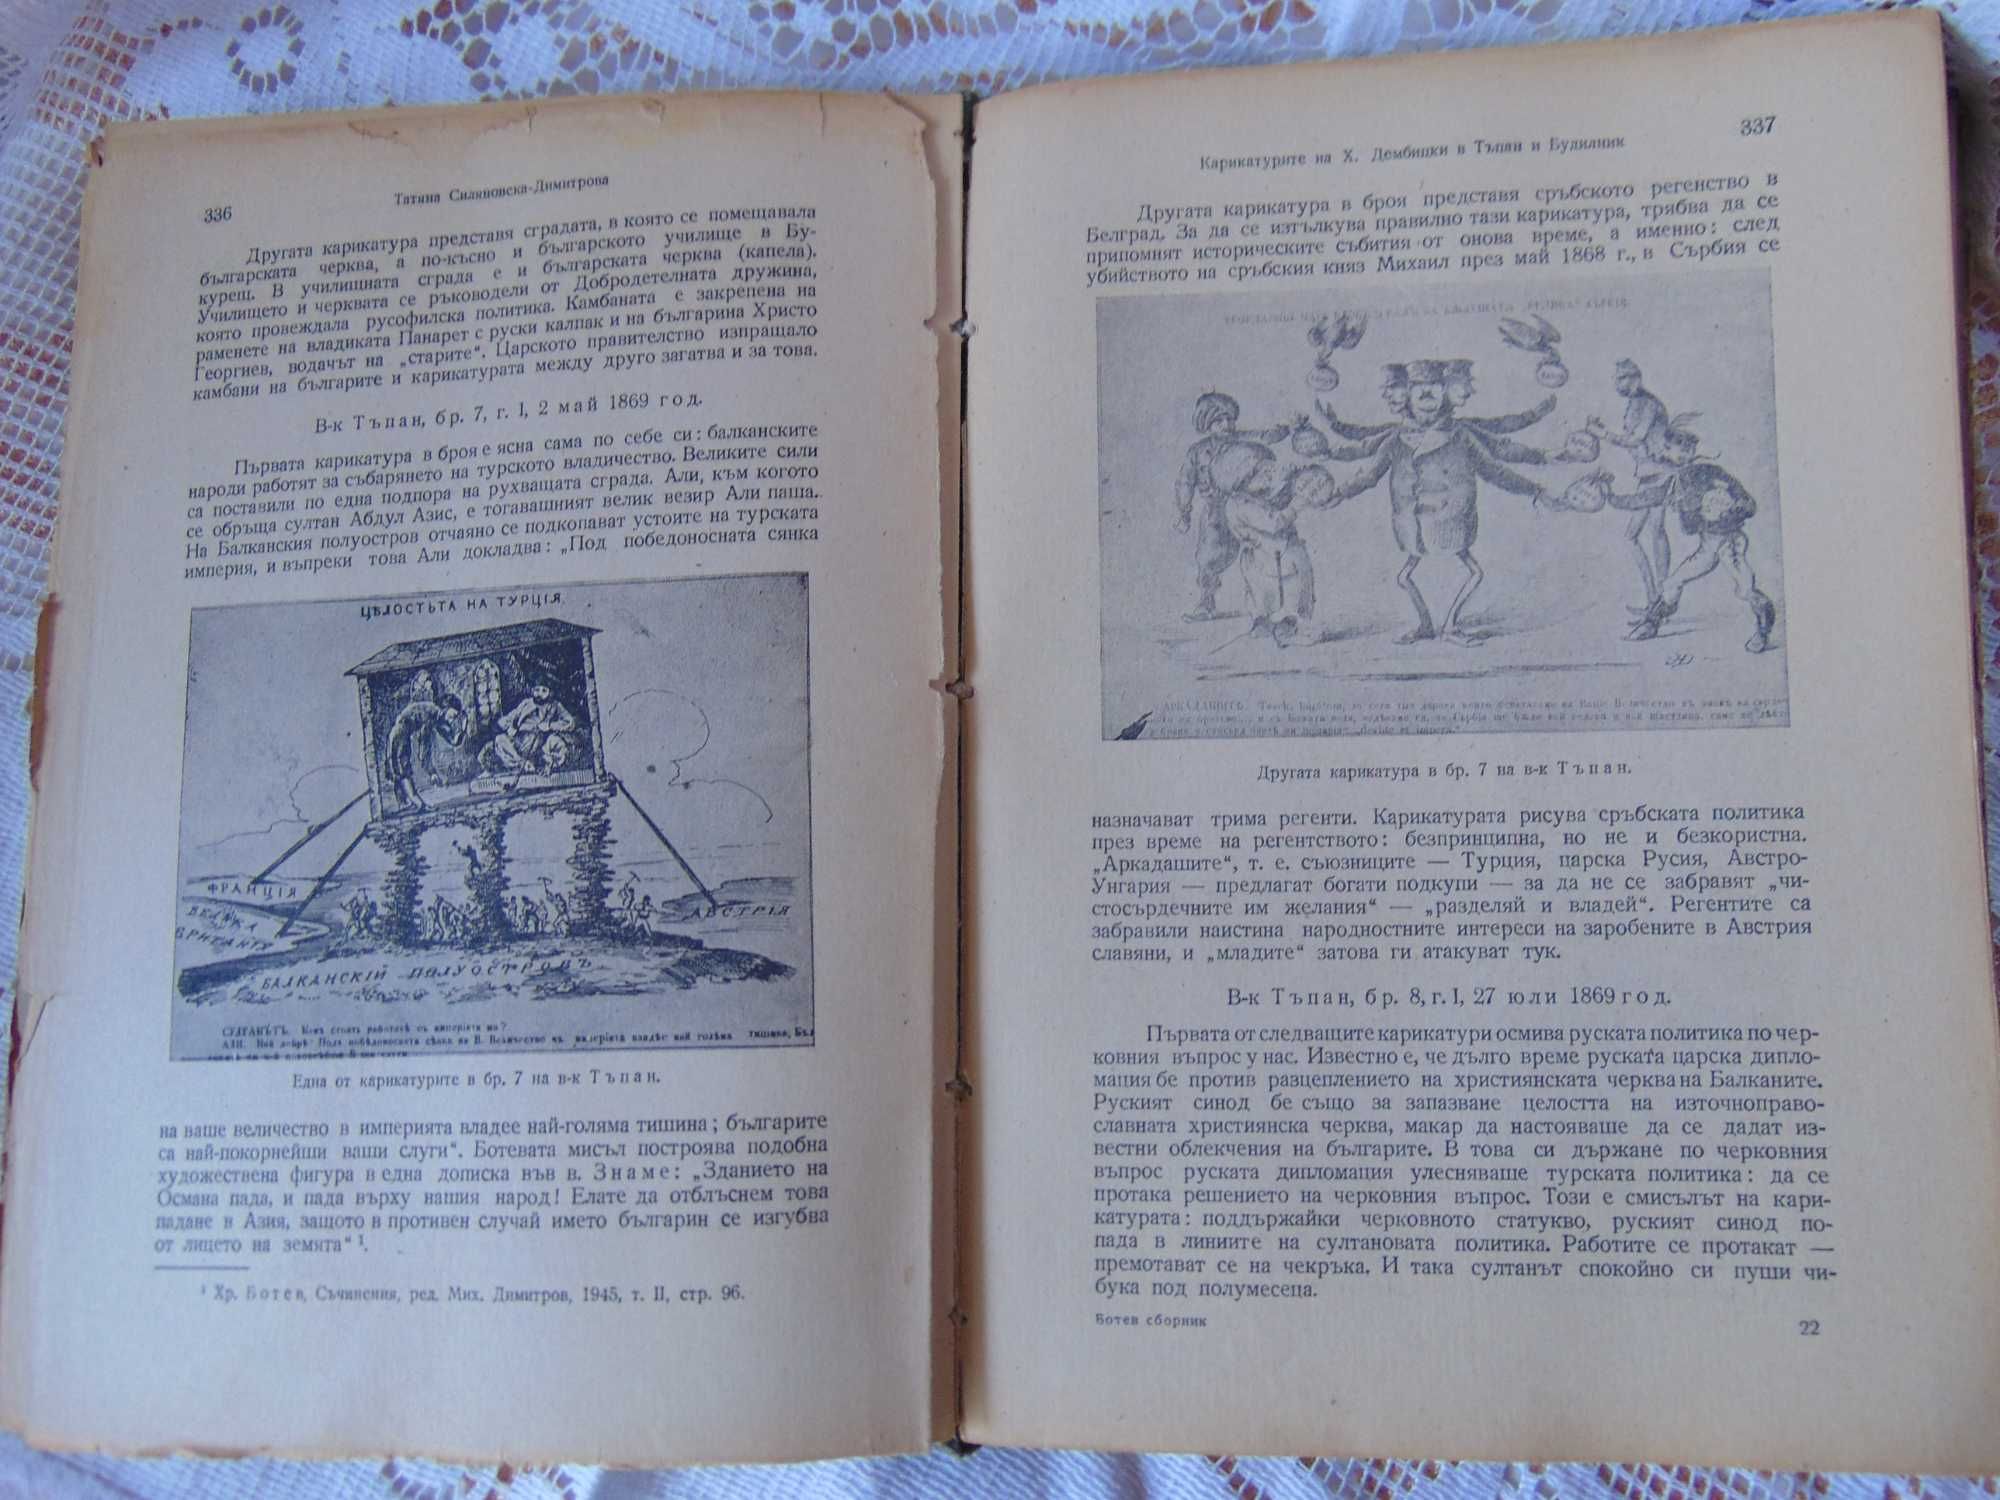 Стара книга за Христо Ботев 1949г.